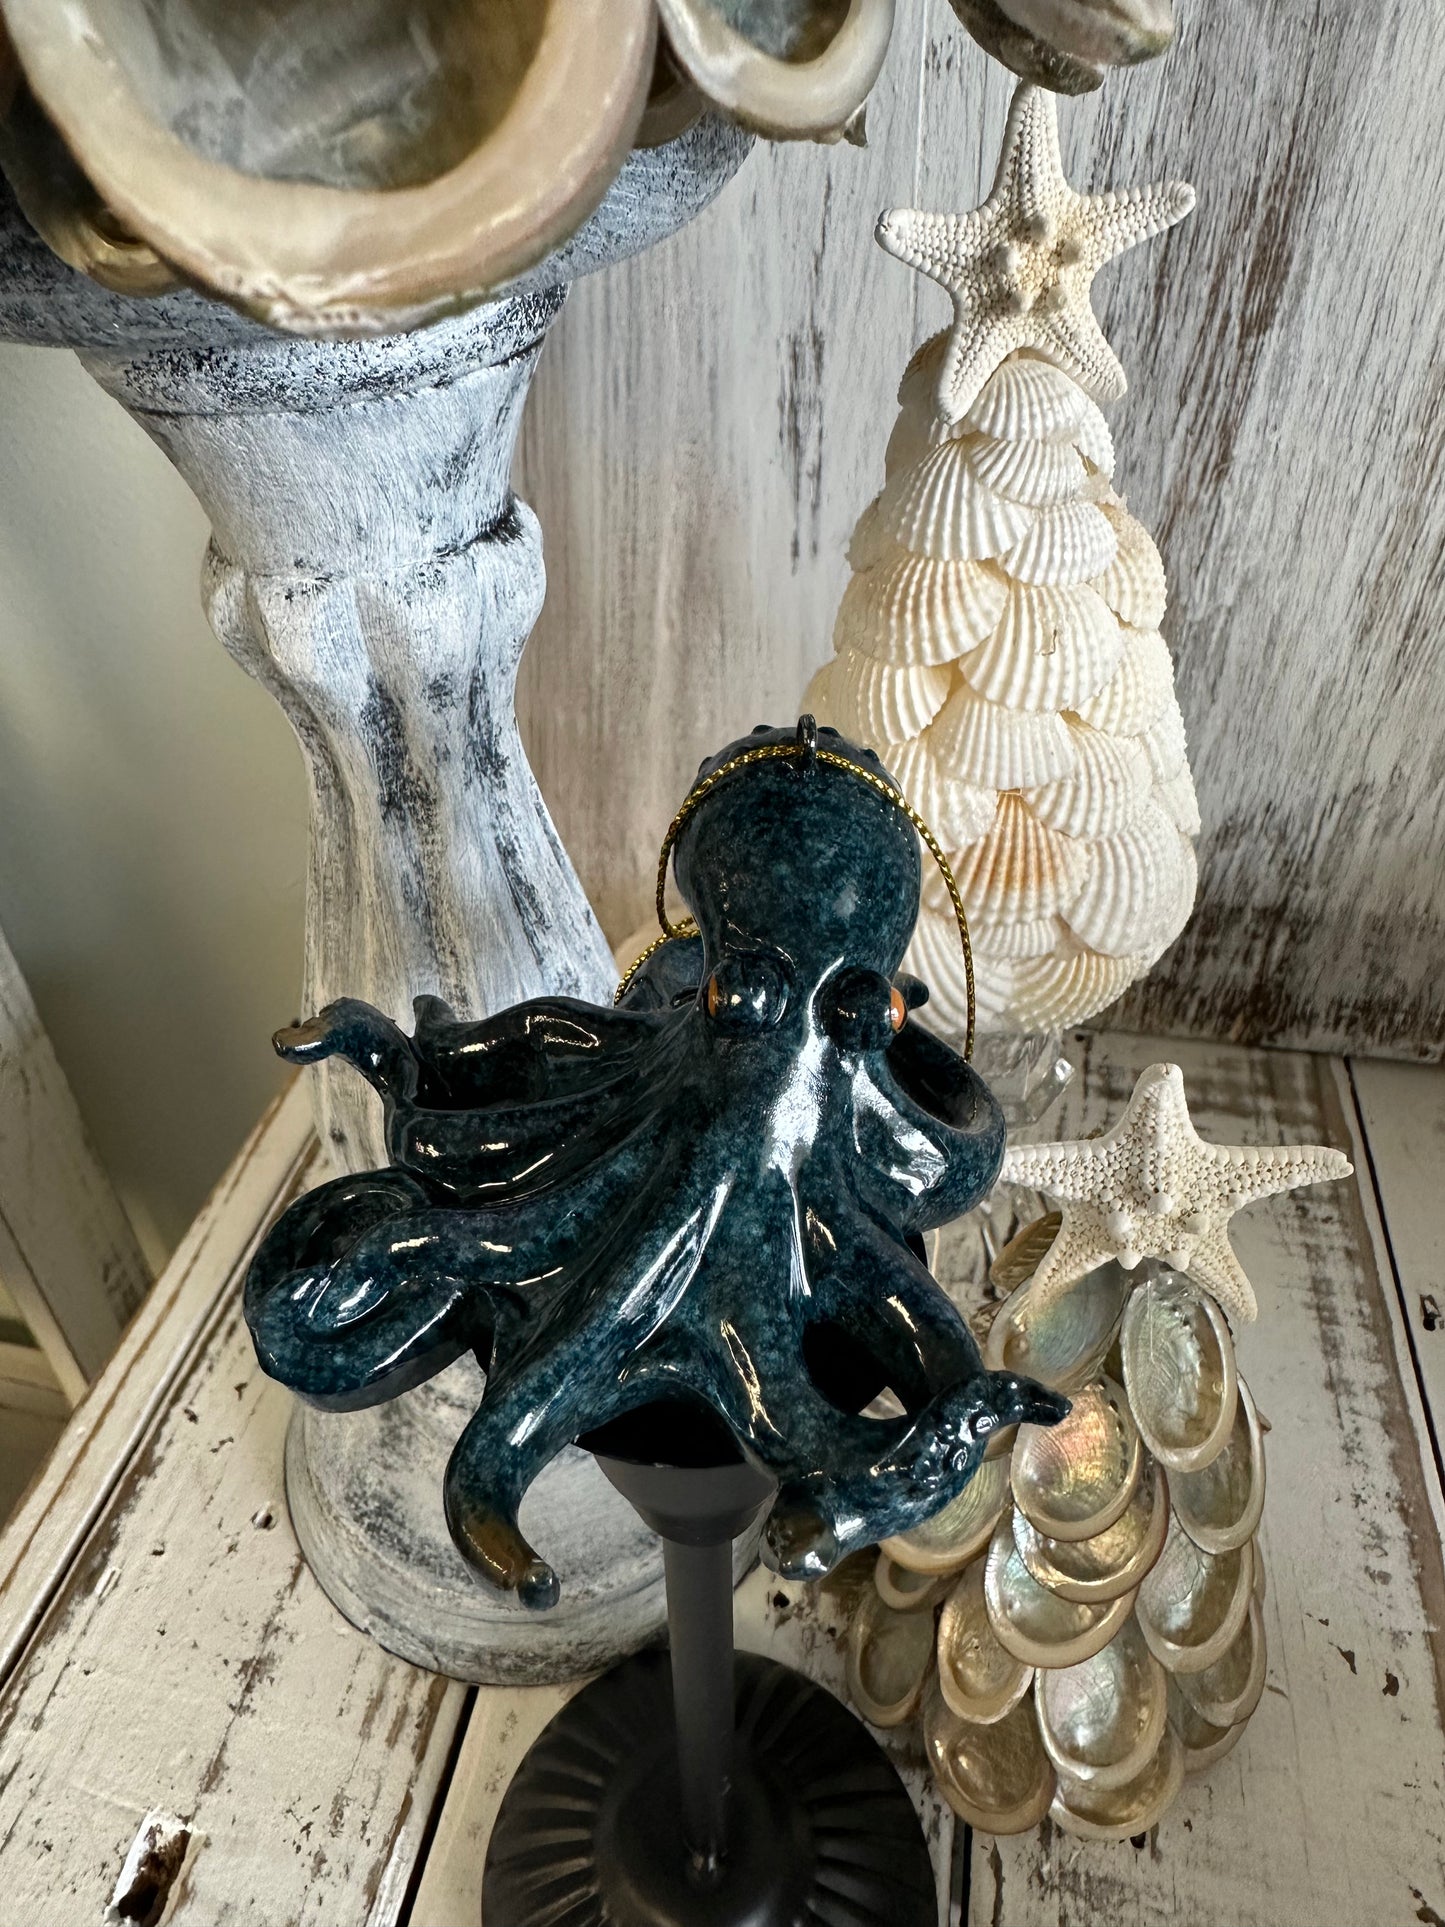 3.5” Octopus Ornament